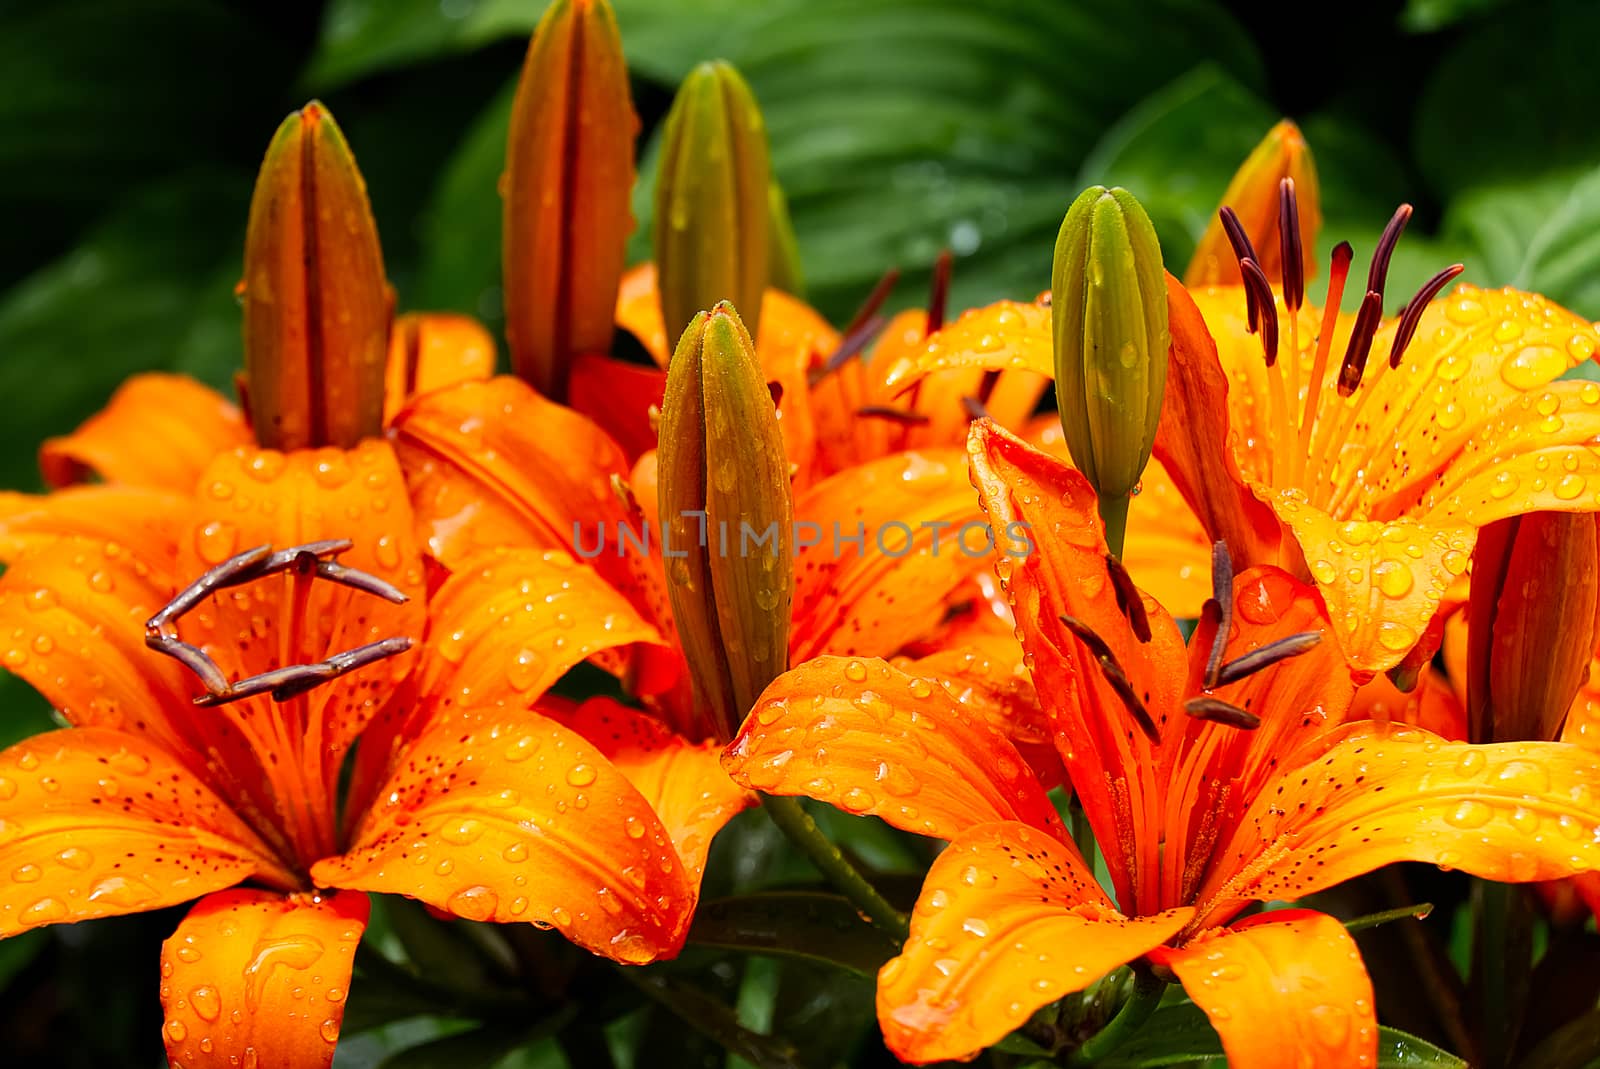 Orange lily flower close-up shoot in garden